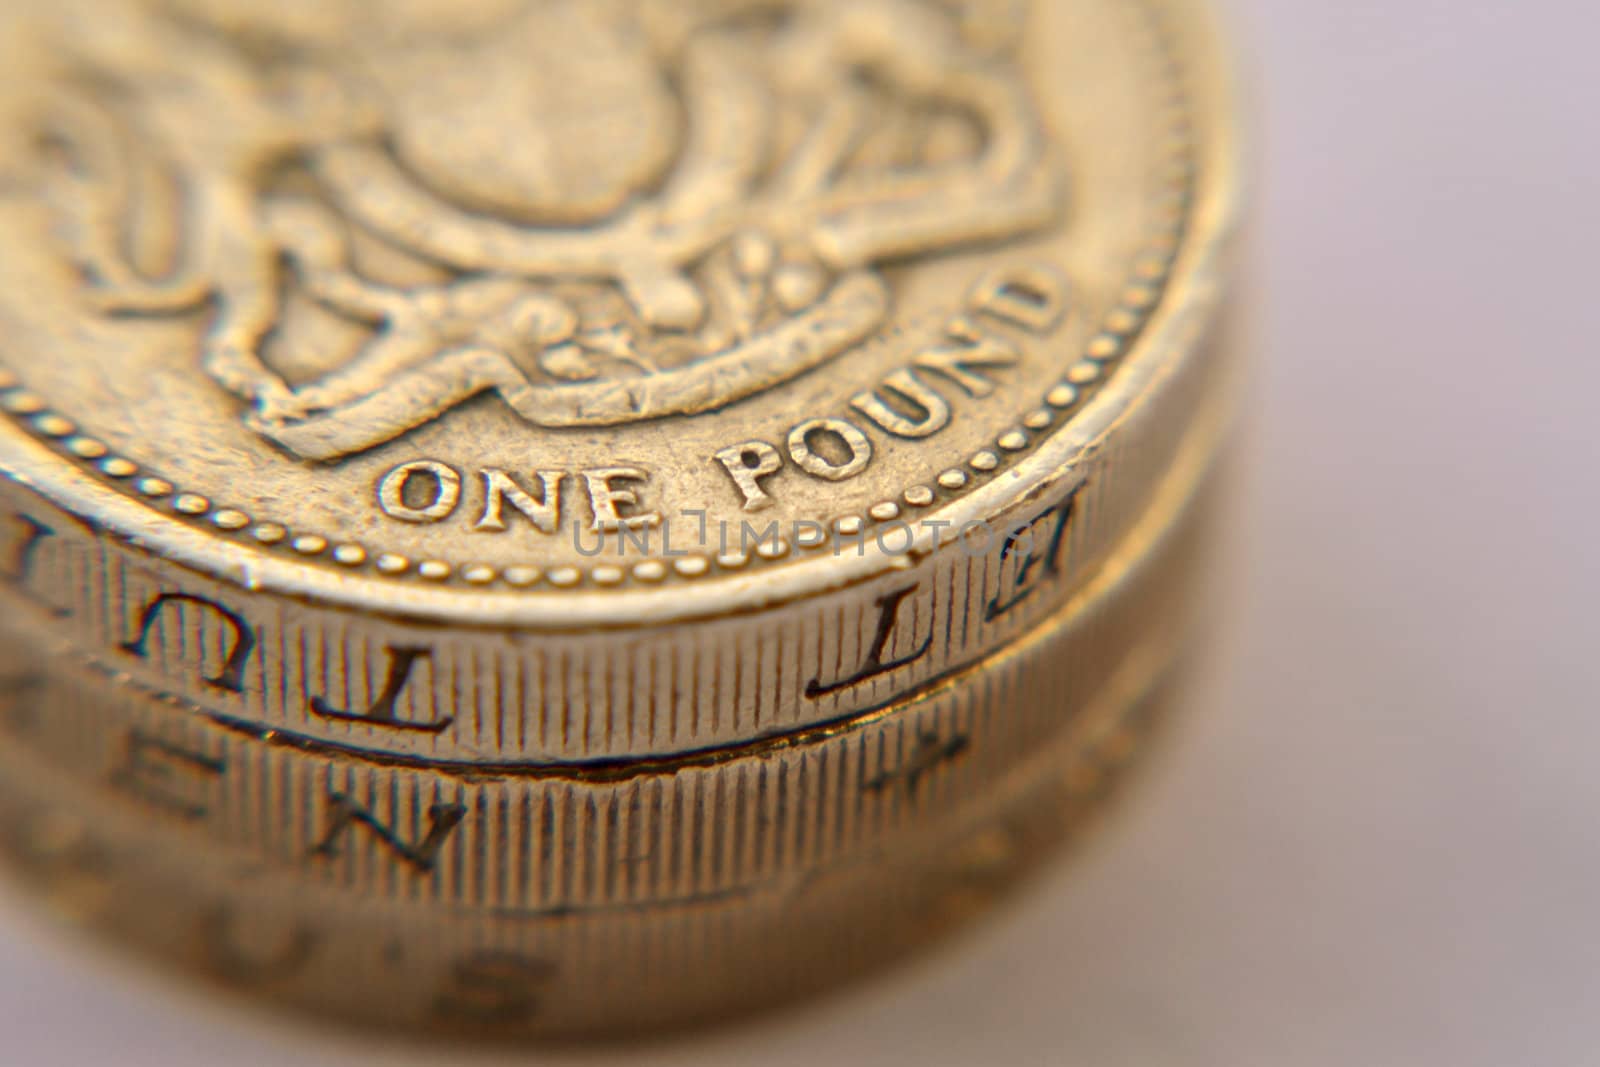 British one pound coins